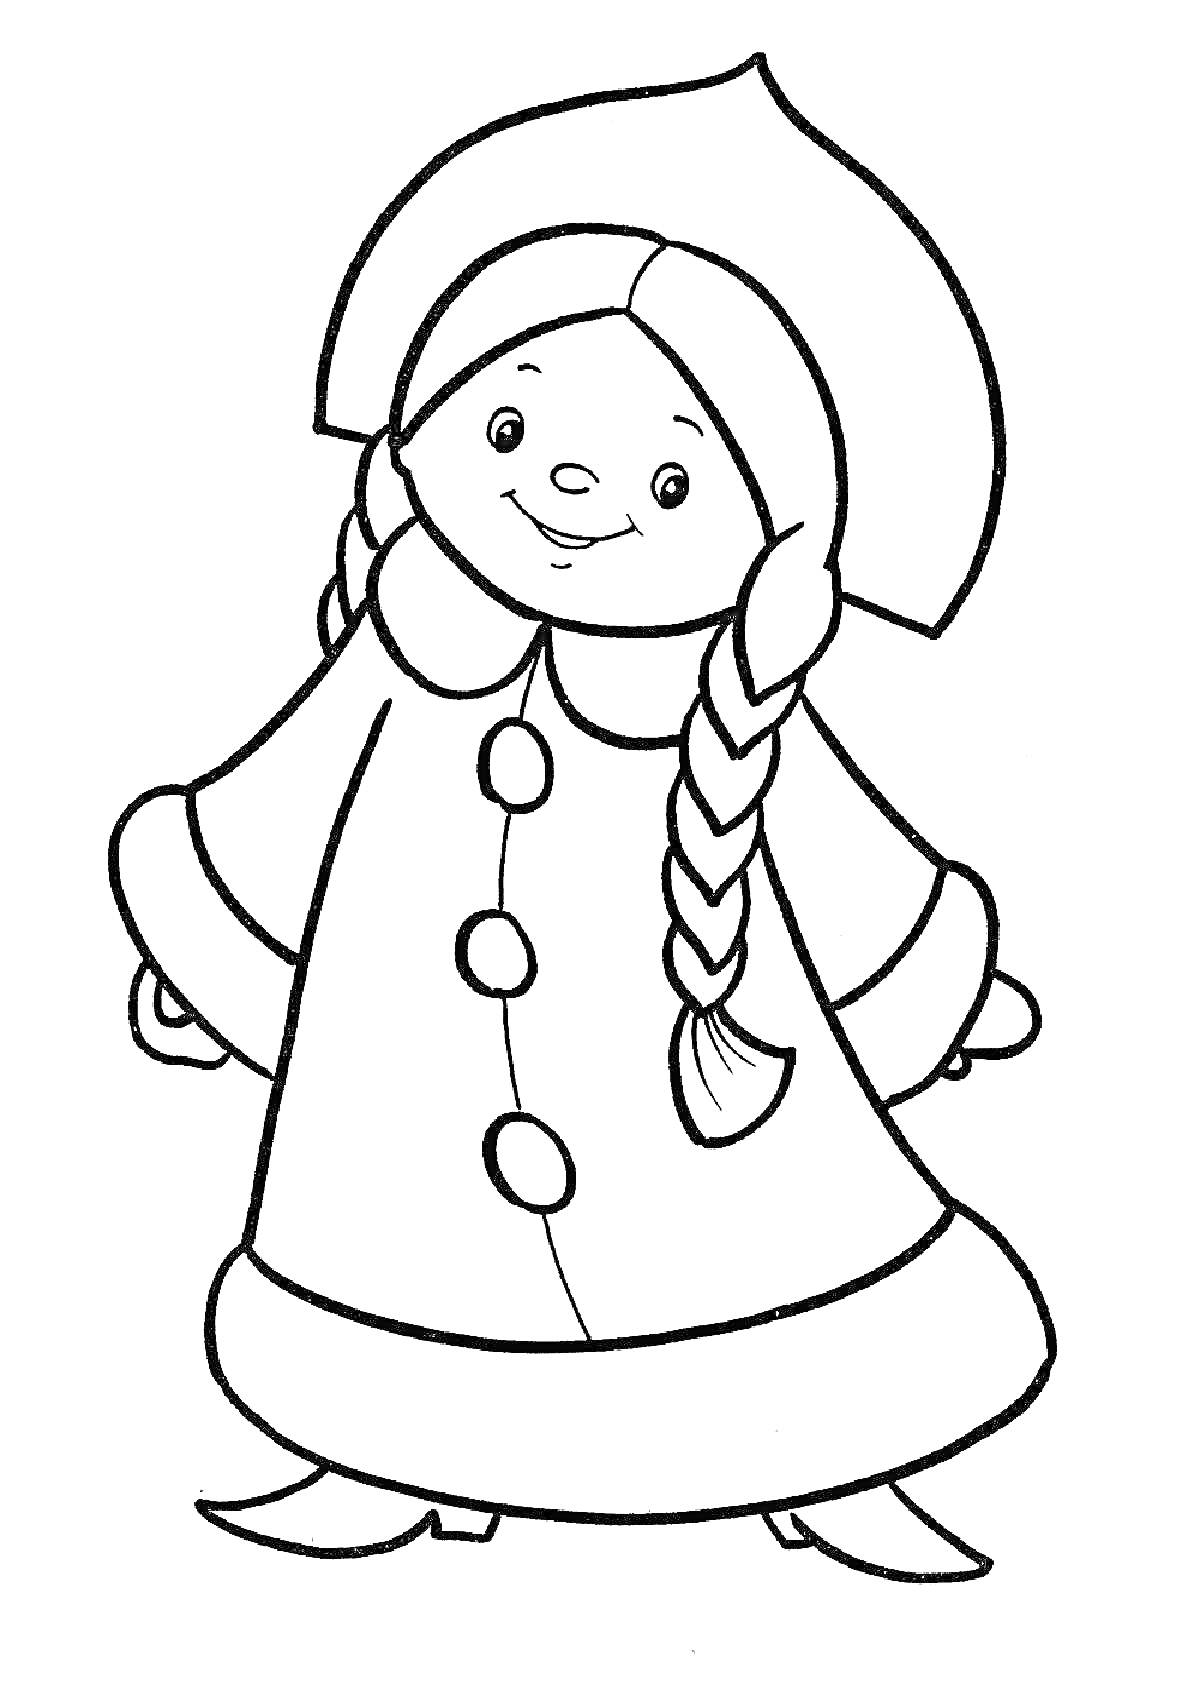 Раскраска Девочка в шапке и пальто с пуговицами и косичками